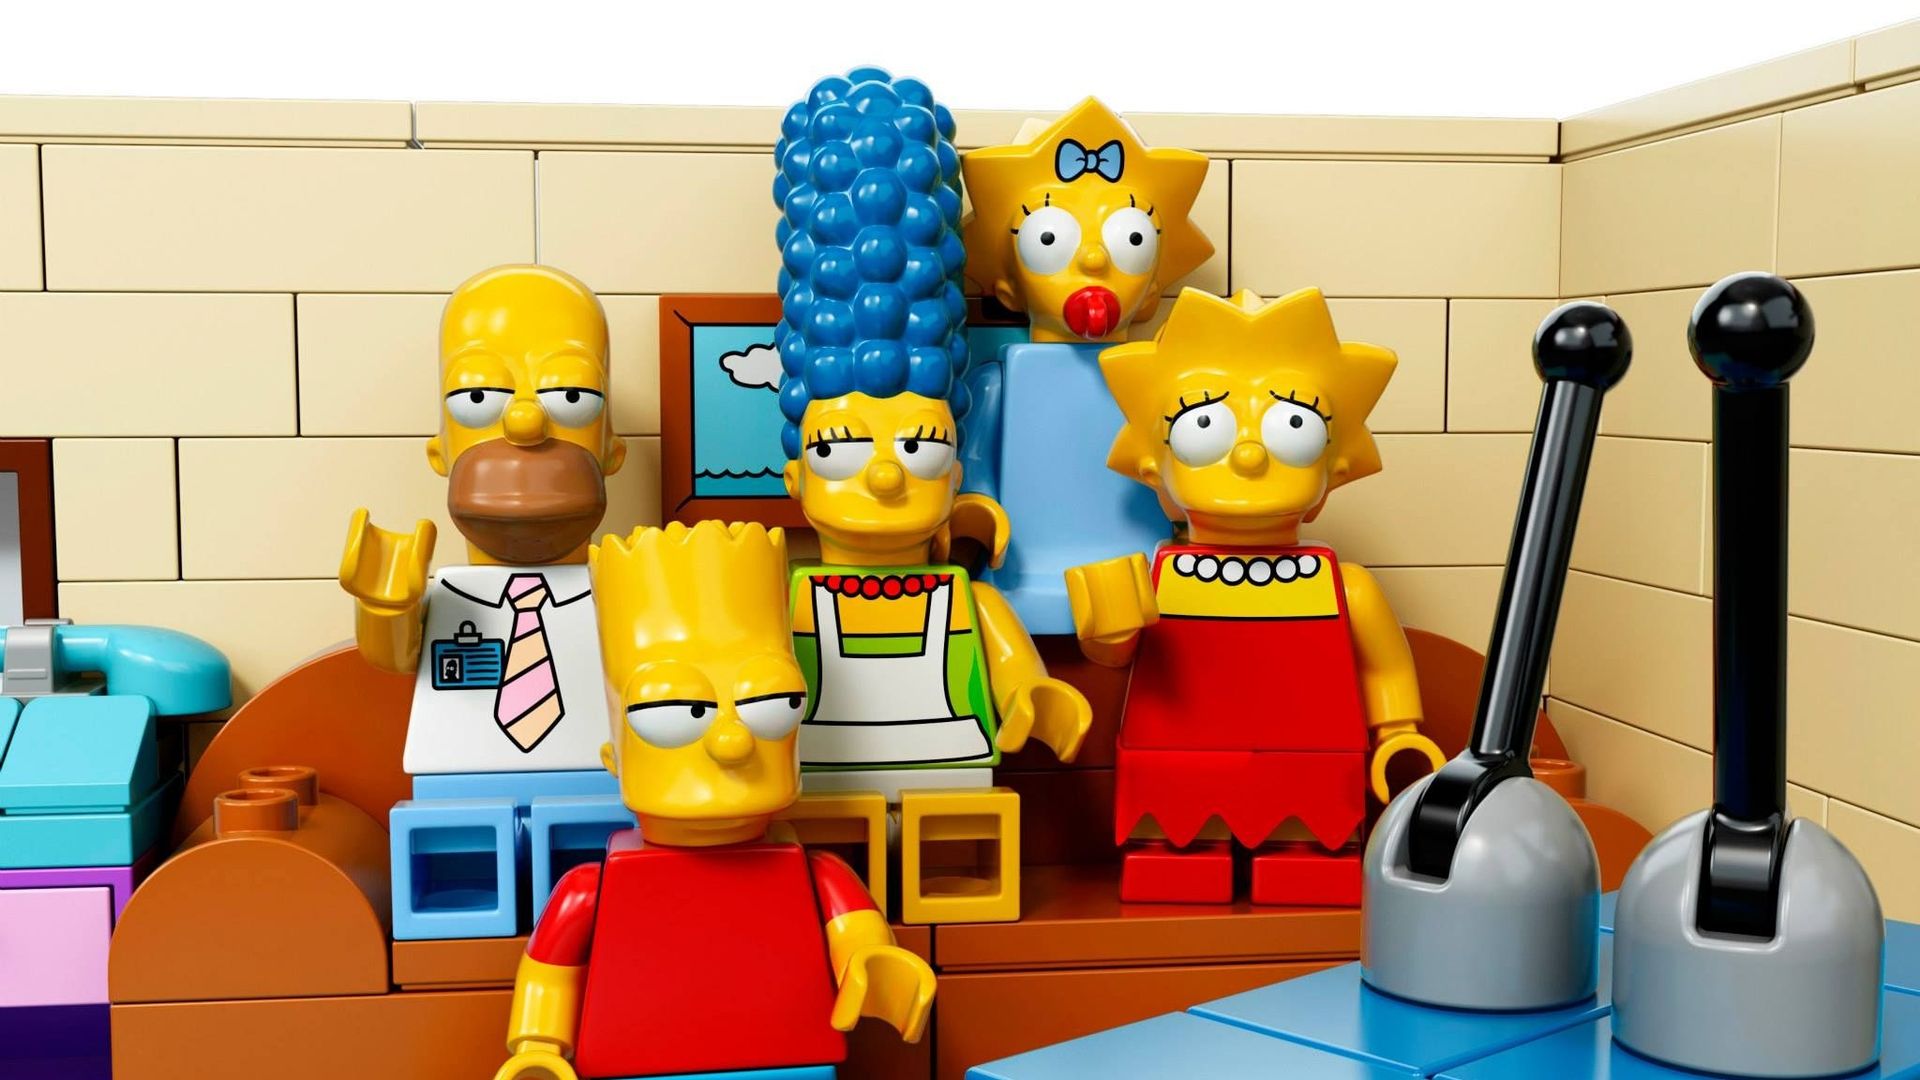 L'épisode des Simpson tout en Lego diffusé le 4 mai aux États-Unis